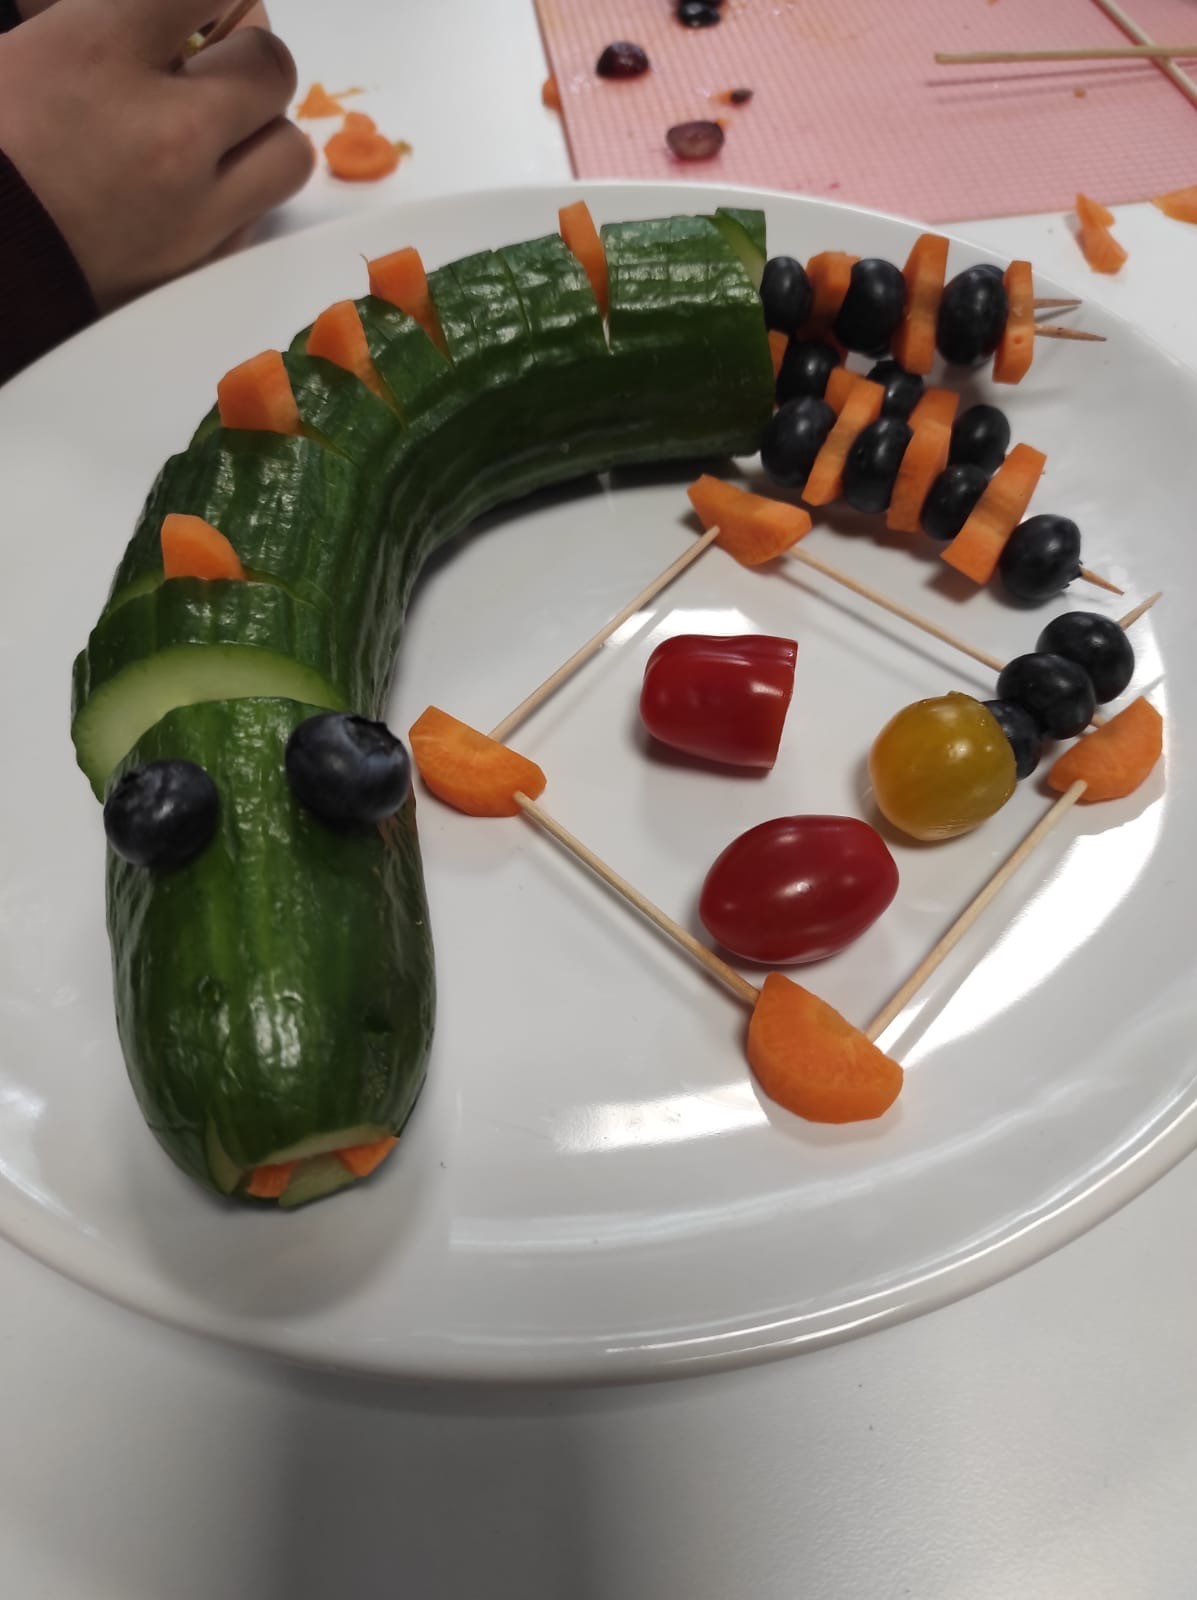  Eine Gurke, die mit anderen Obst- und Gemüsesorten zu einer Schlange drapiert wurde 